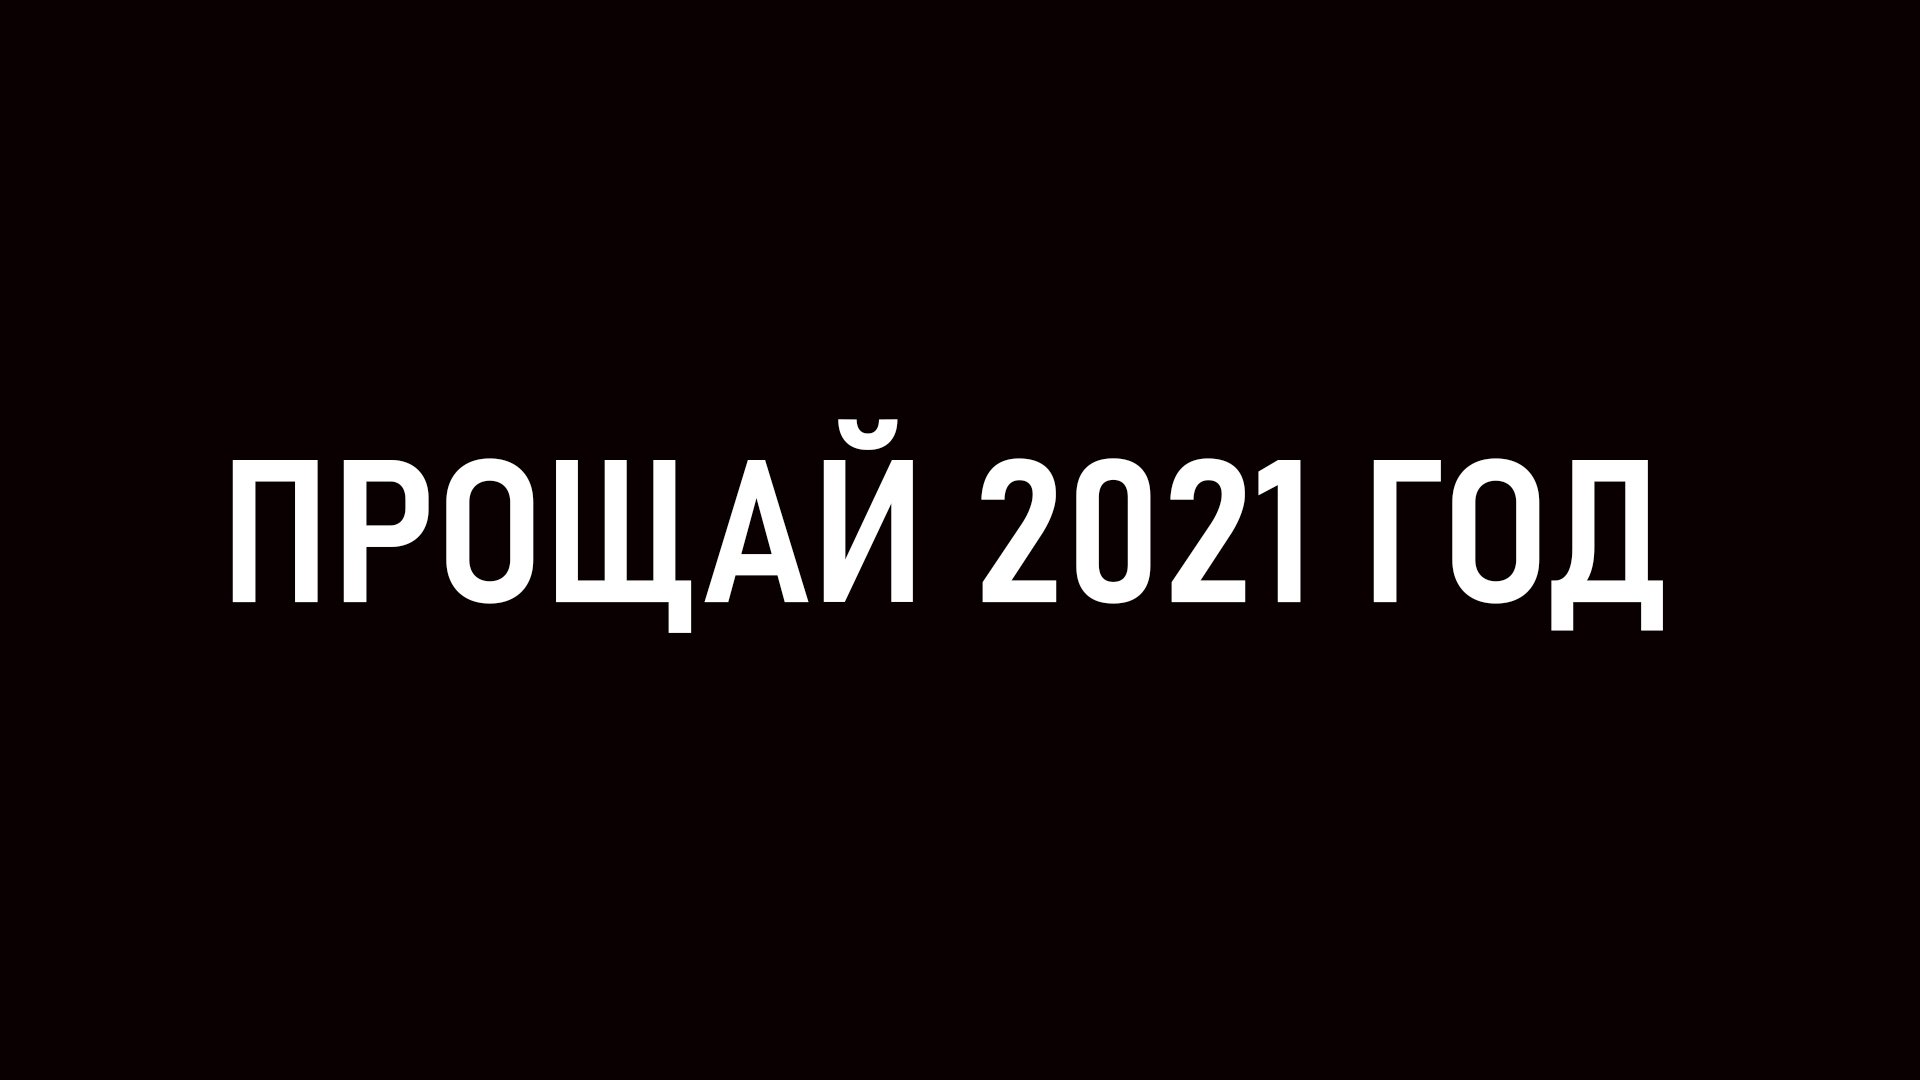 Извини 2022. Прощай 2021. Прощённый (2021). Прощай 2022 год. Прощай 2023 год.